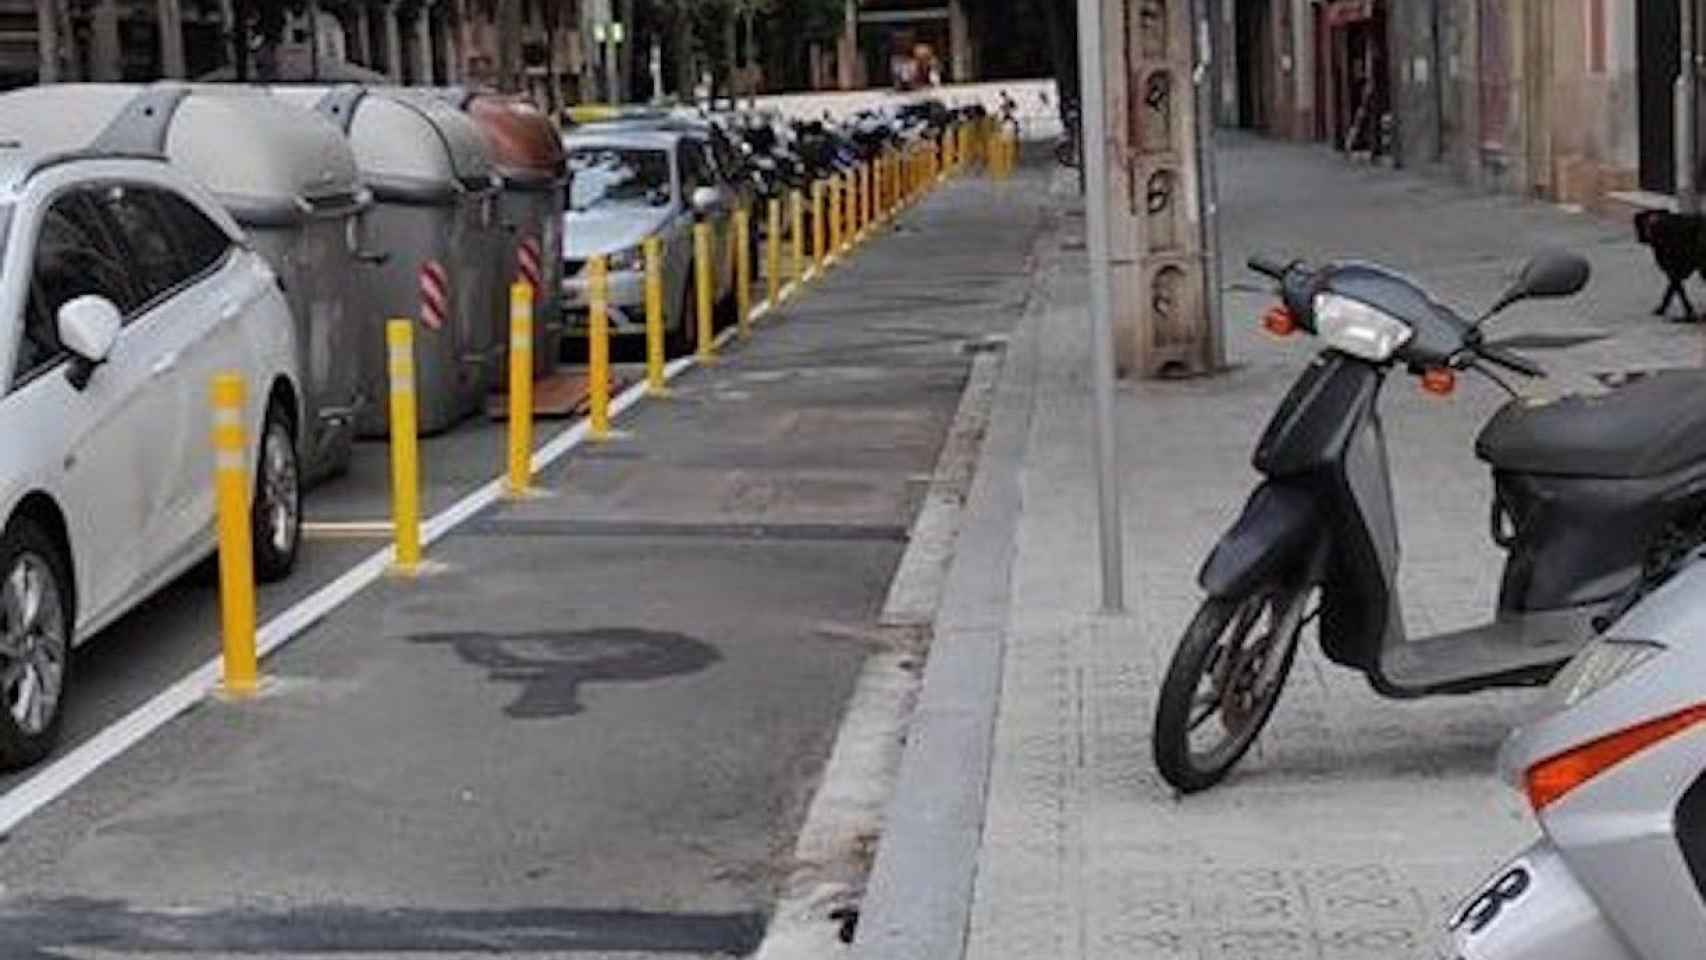 Los pivotes amarillo, junto a las plazas de aparcamiento, que impiden salir a los conductores / TWITTER @ONVASBARCELONA